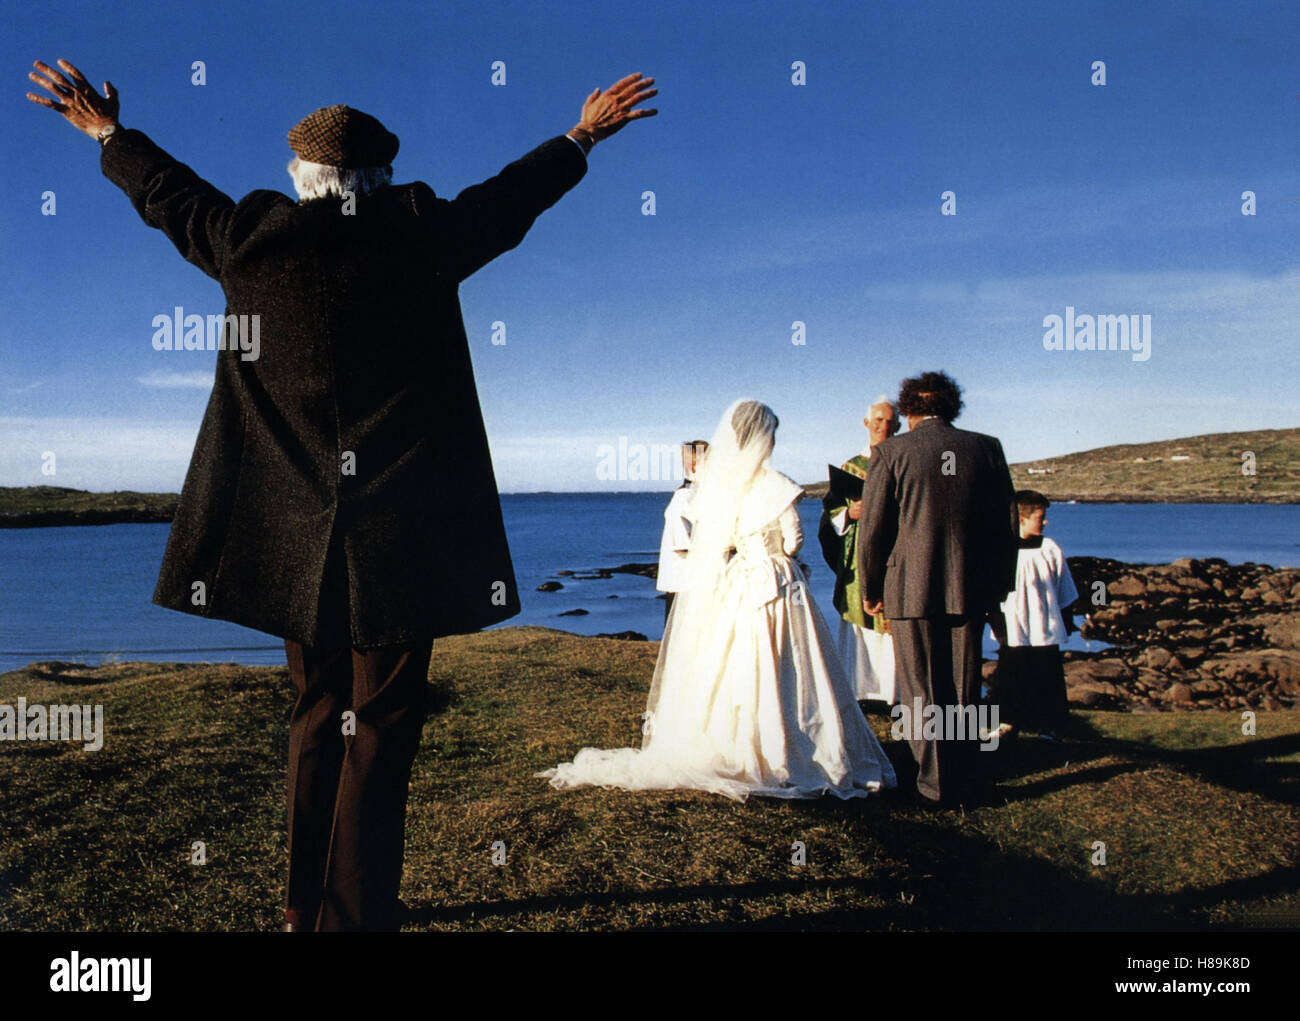 Heirat nicht ausgeschlossen, (il matchmaker) IRL-GB-USA 1997, Regie: Mark Joffe, MILO O'SHEA, Chiave: Hochzeit, Brautpaar, Landschaft Foto Stock